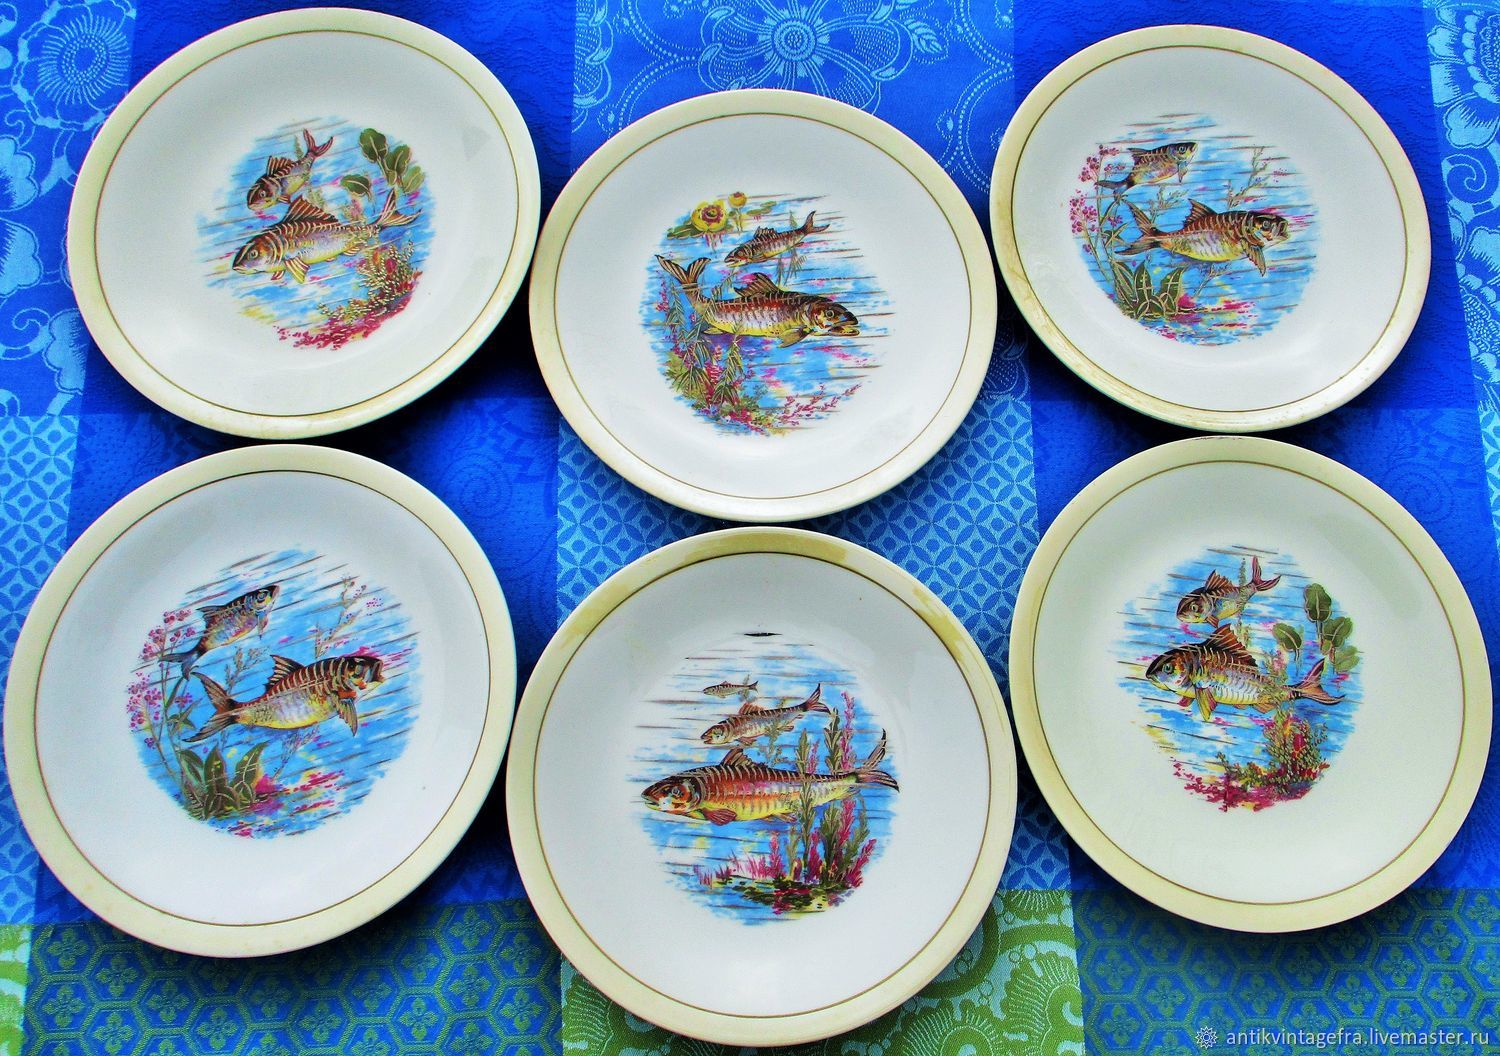 Винтаж: Старинный набор тарелок для рыбы 6 штук Poissons фарфор LIMOGES, Предметы интерьера винтажные, Орлеан,  Фото №1